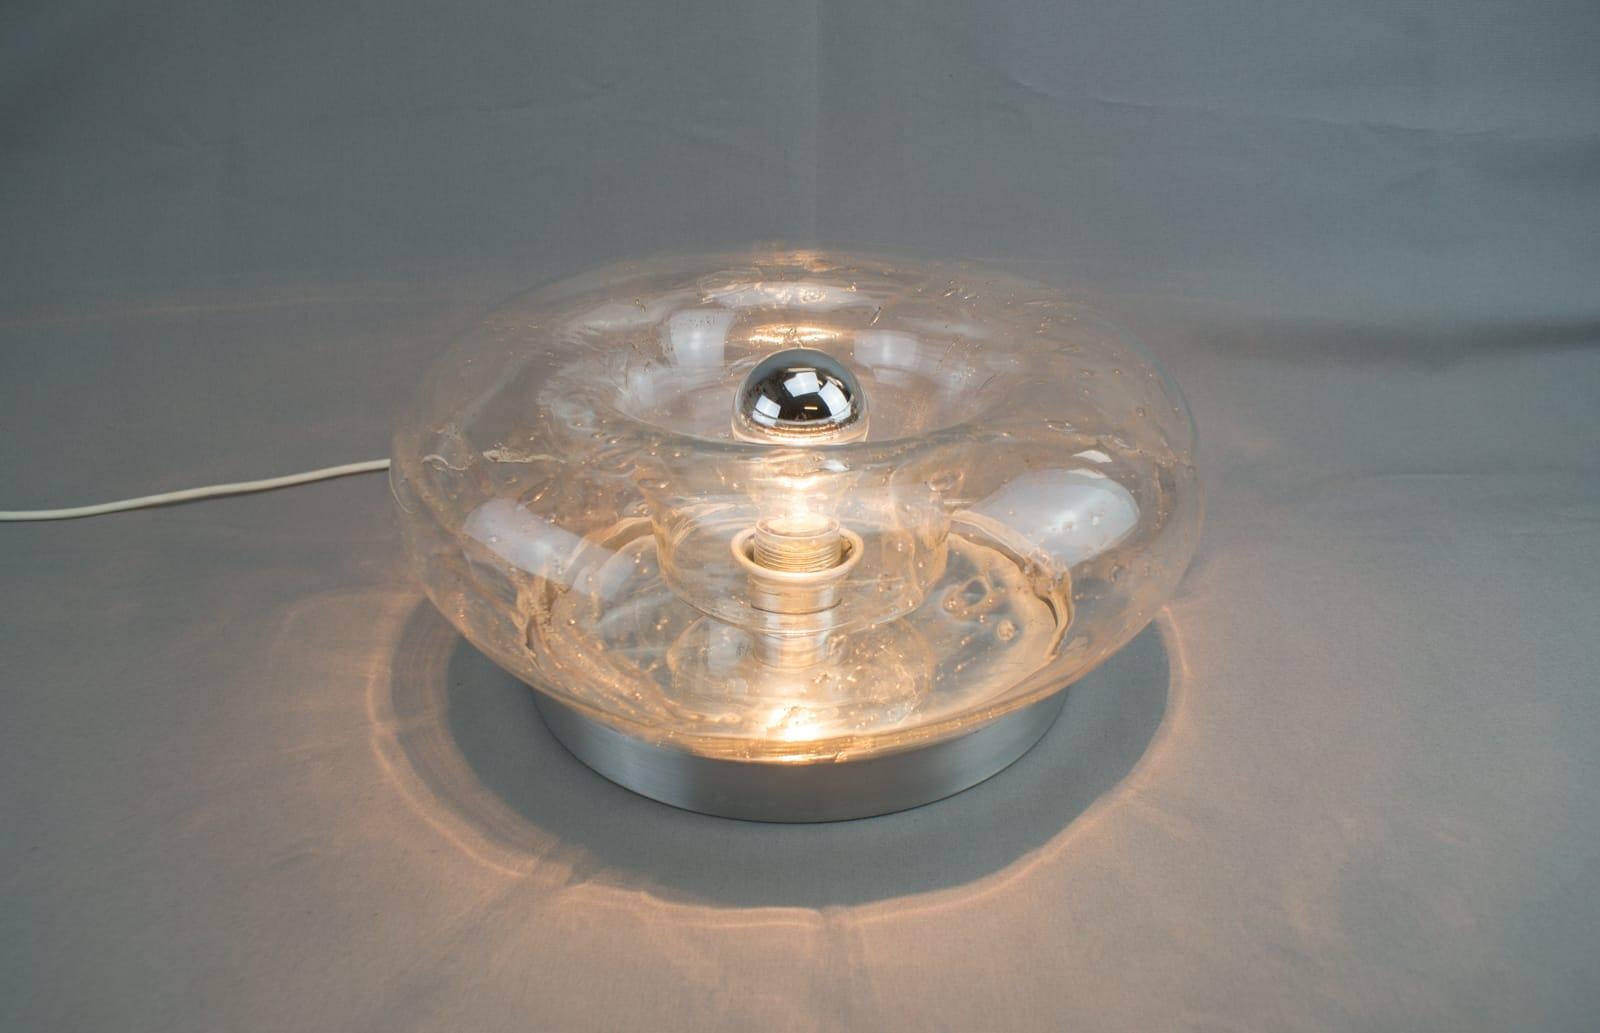 In sehr gutem Vintage-Zustand.

Die Lampe ist in Messing und Glas ausgeführt und diese Lampe braucht eine E27 Edison-Schraube passen Glühbirnen. Es ist verkabelt, in funktionsfähigem Zustand und läuft sowohl auf 110 / 230 Volt.